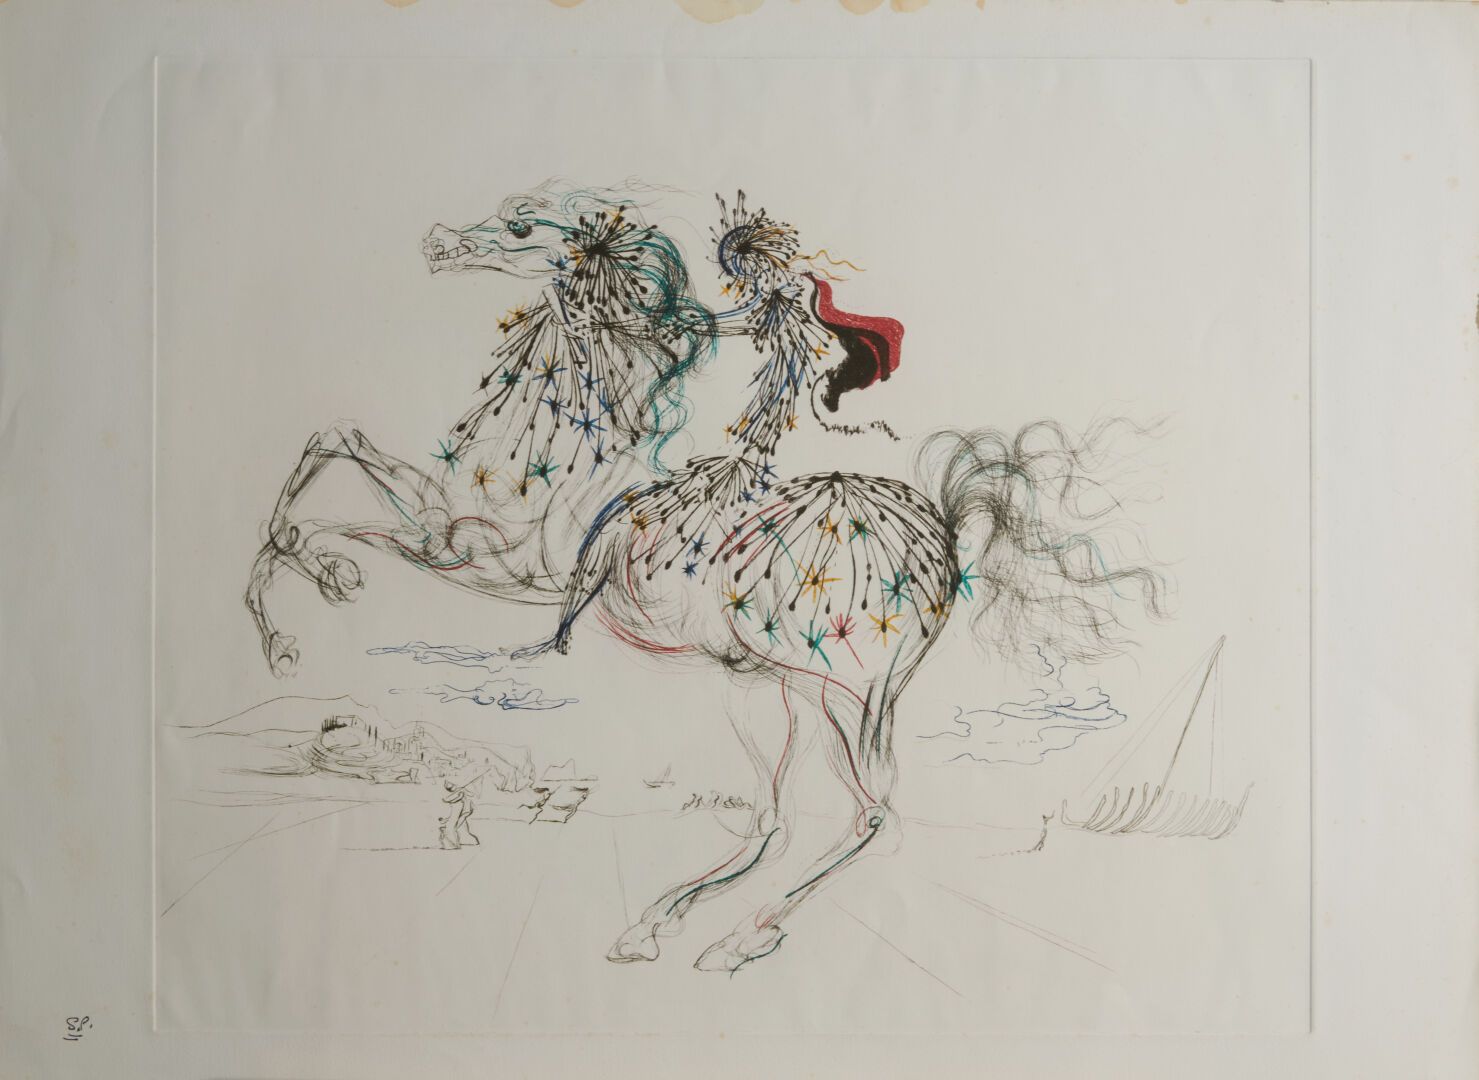 Null DALI Salvador (1904-1989)

Impresión "The Rider" - 49x59